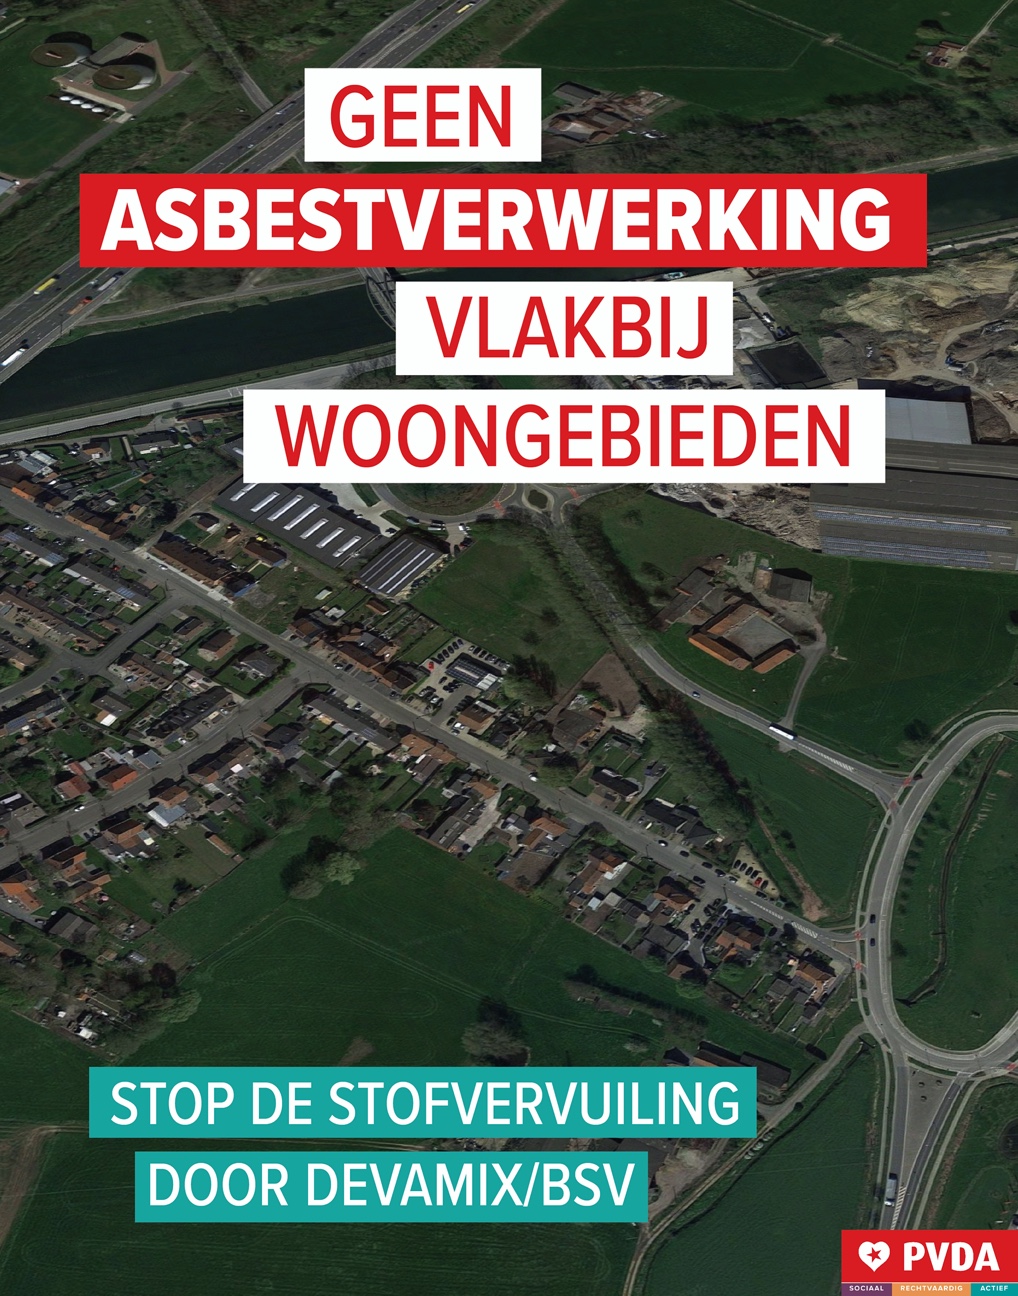 PVDA bezorgd over asbestverwerking in Harelbeke